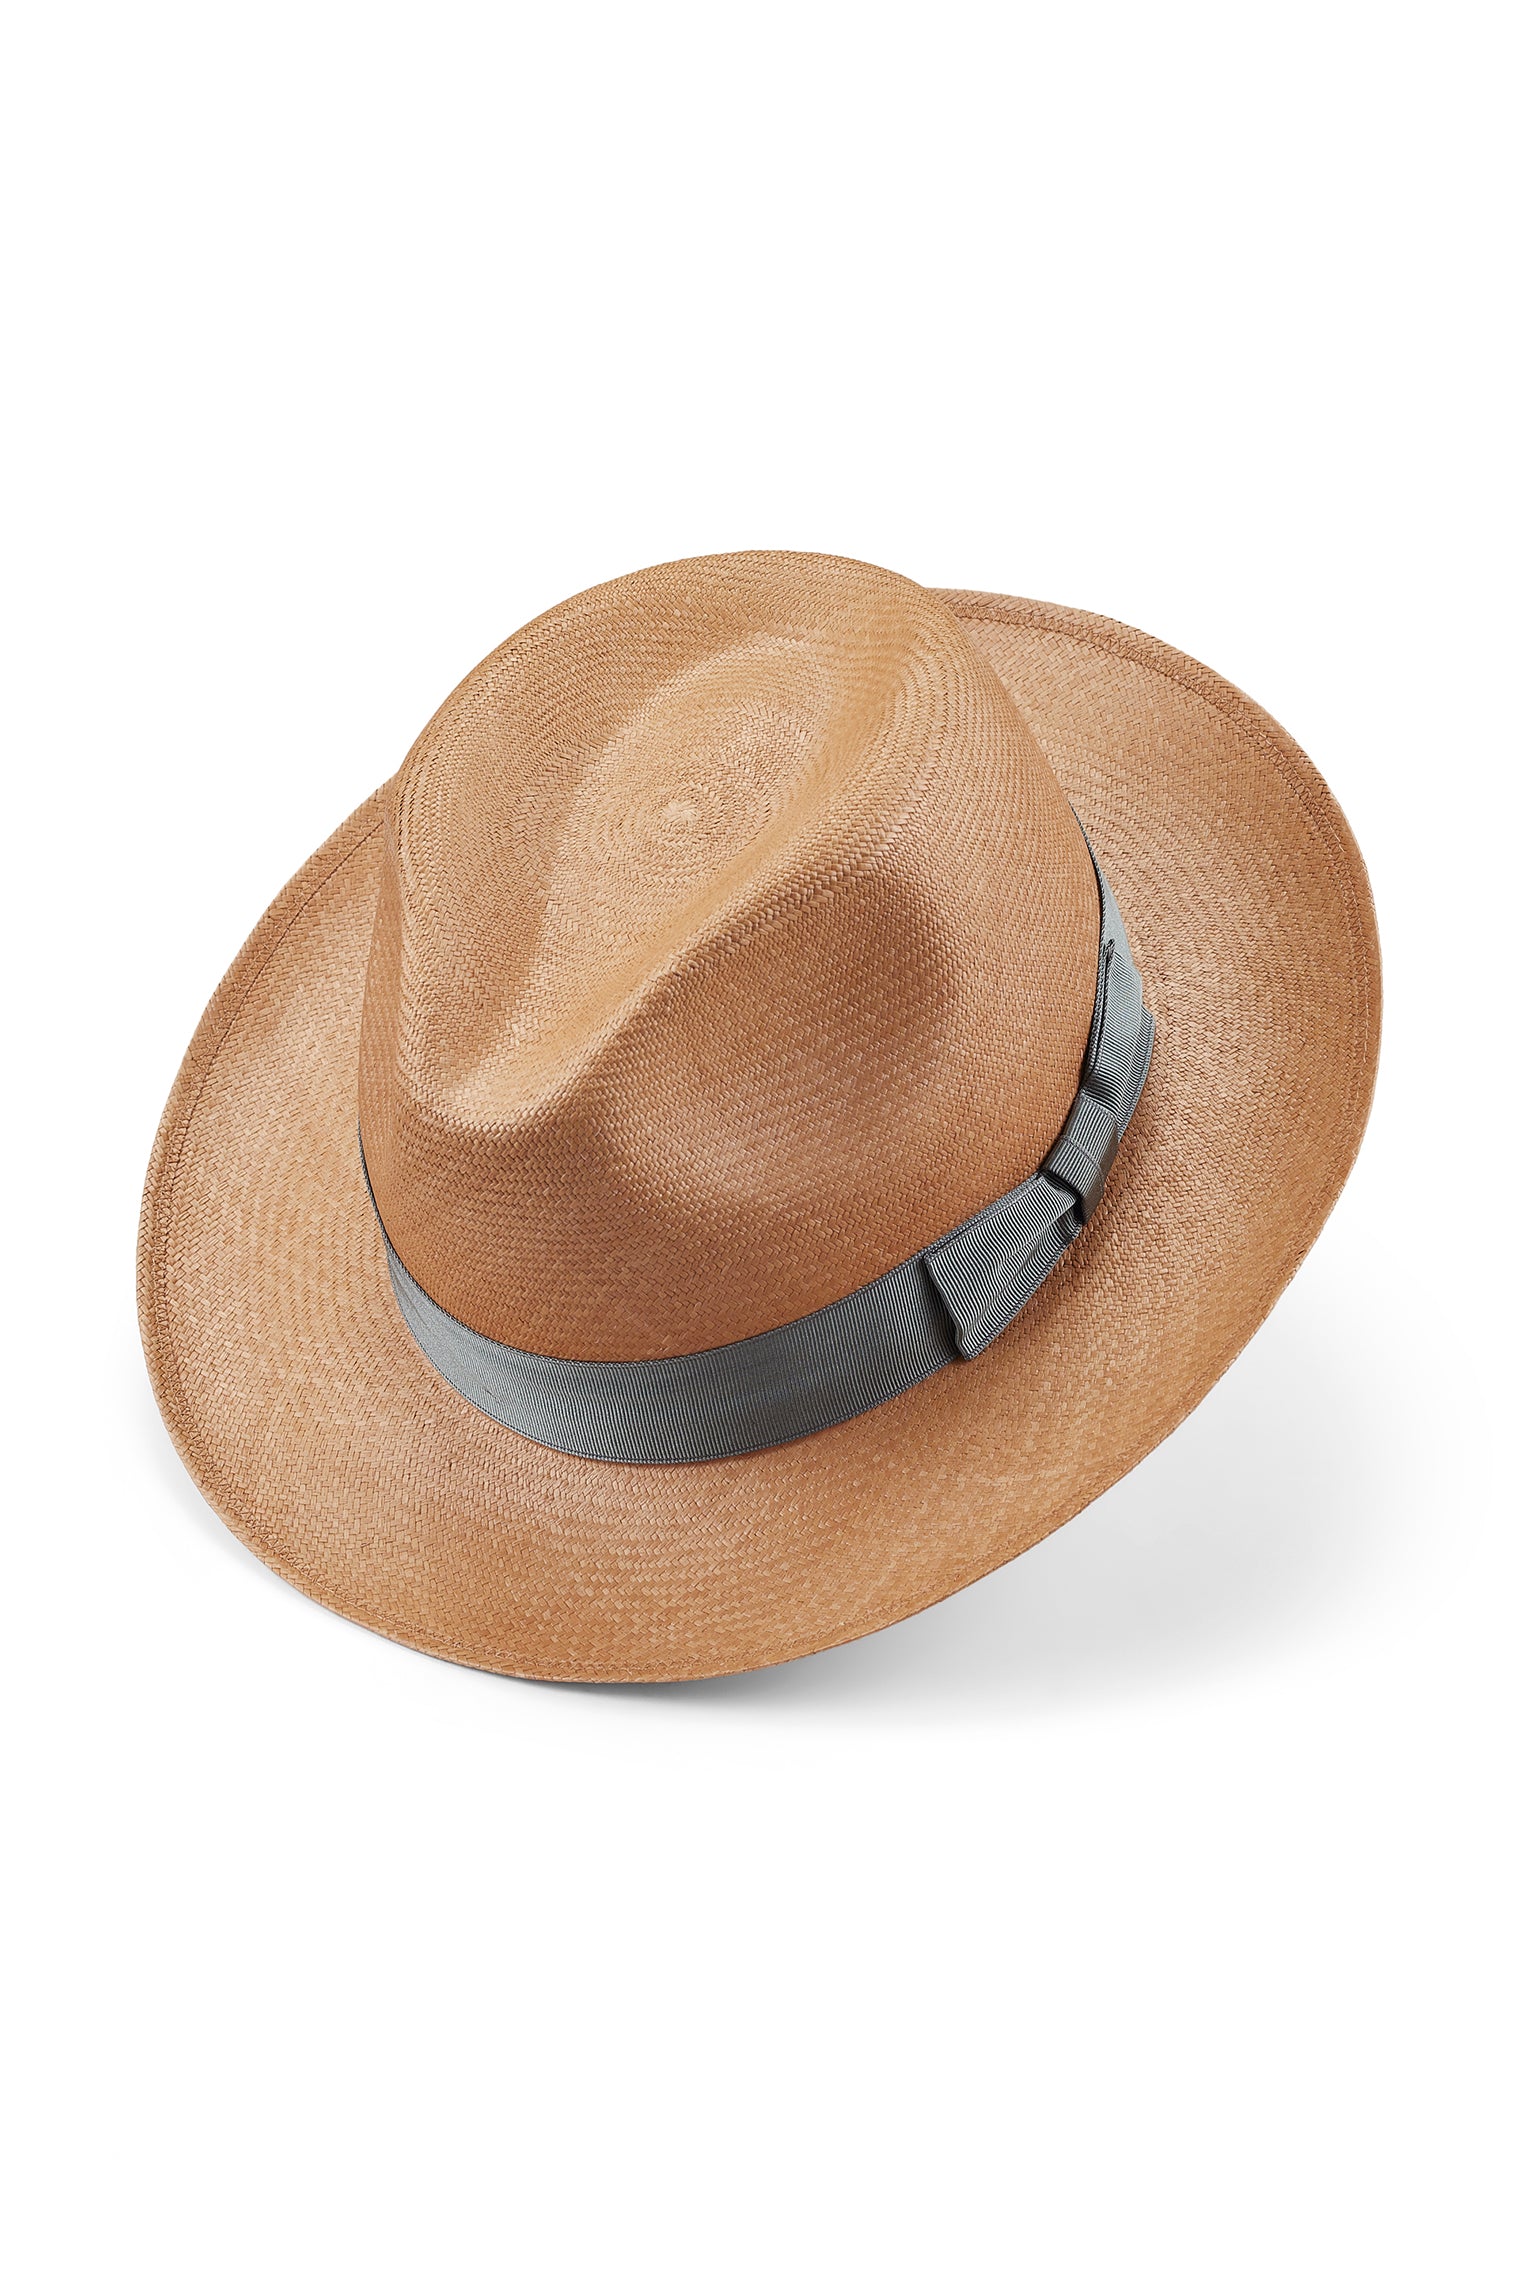 Fairbanks Mocha Panama - Sun Hats & Boaters - Lock & Co. Hatters London UK